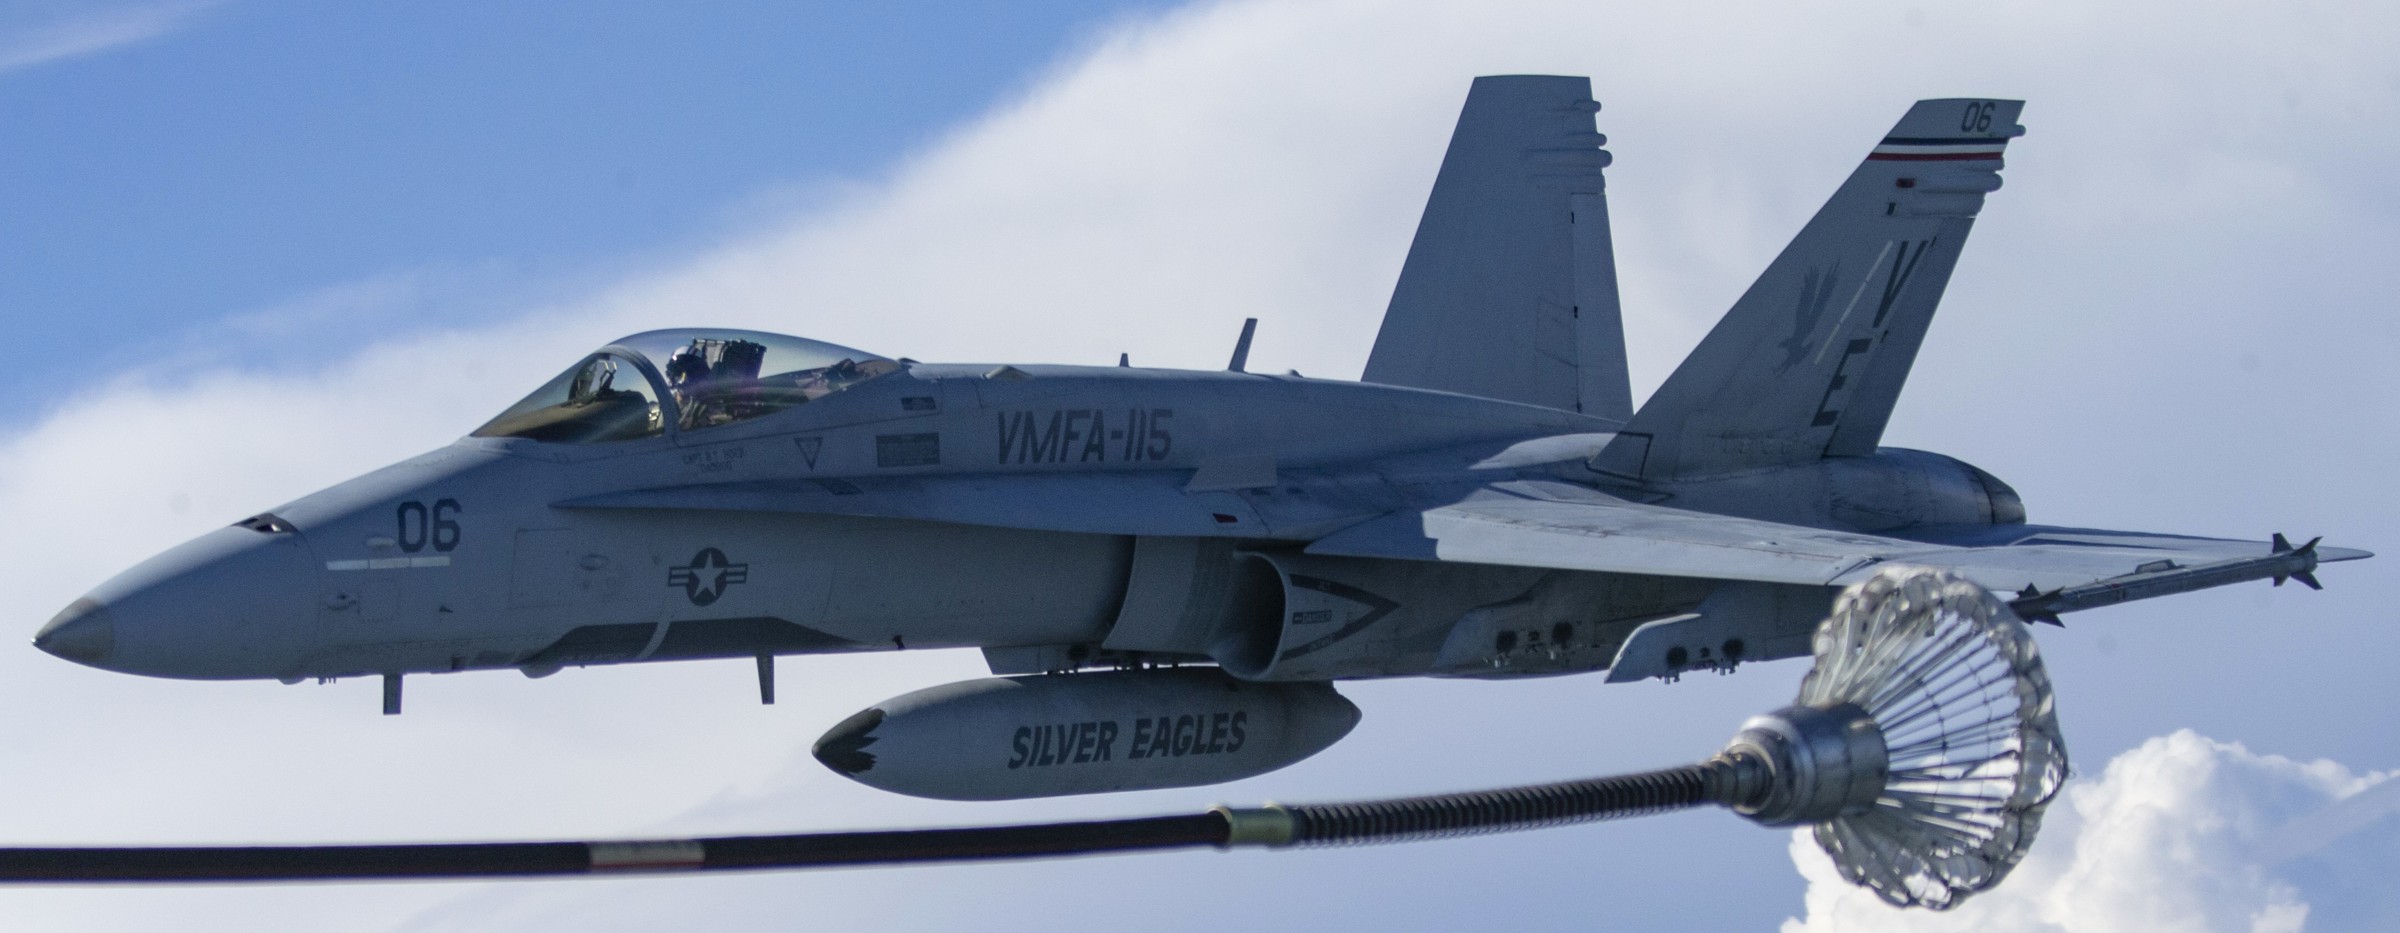 vmfa-115 silver eagles marine fighter attack squadron usmc f/a-18c hornet 215